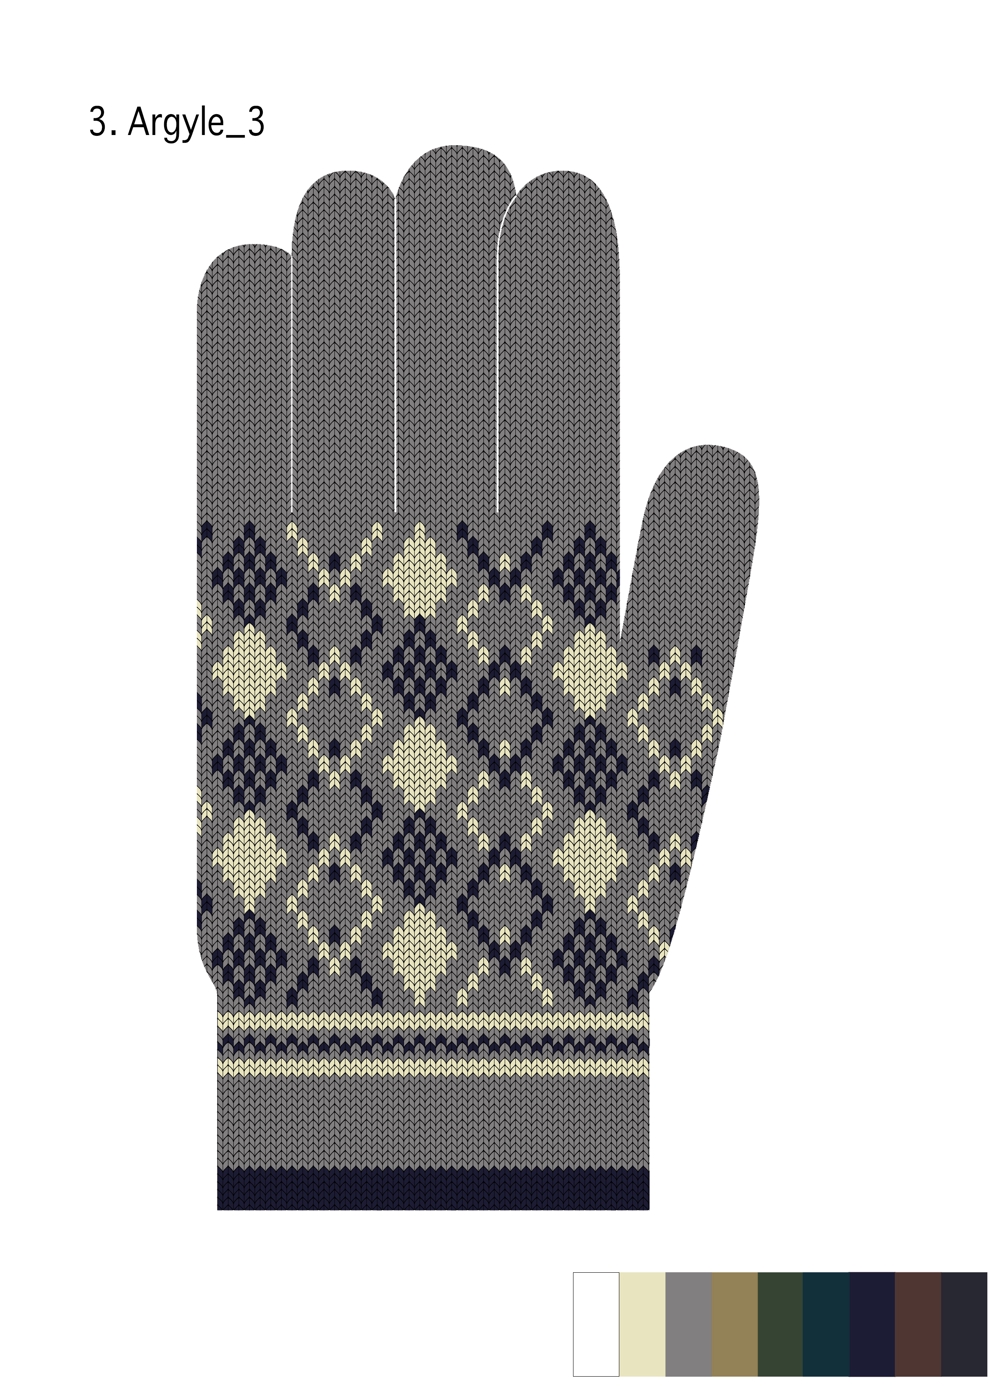 来季冬向け　ニット手袋の柄デザイン募集